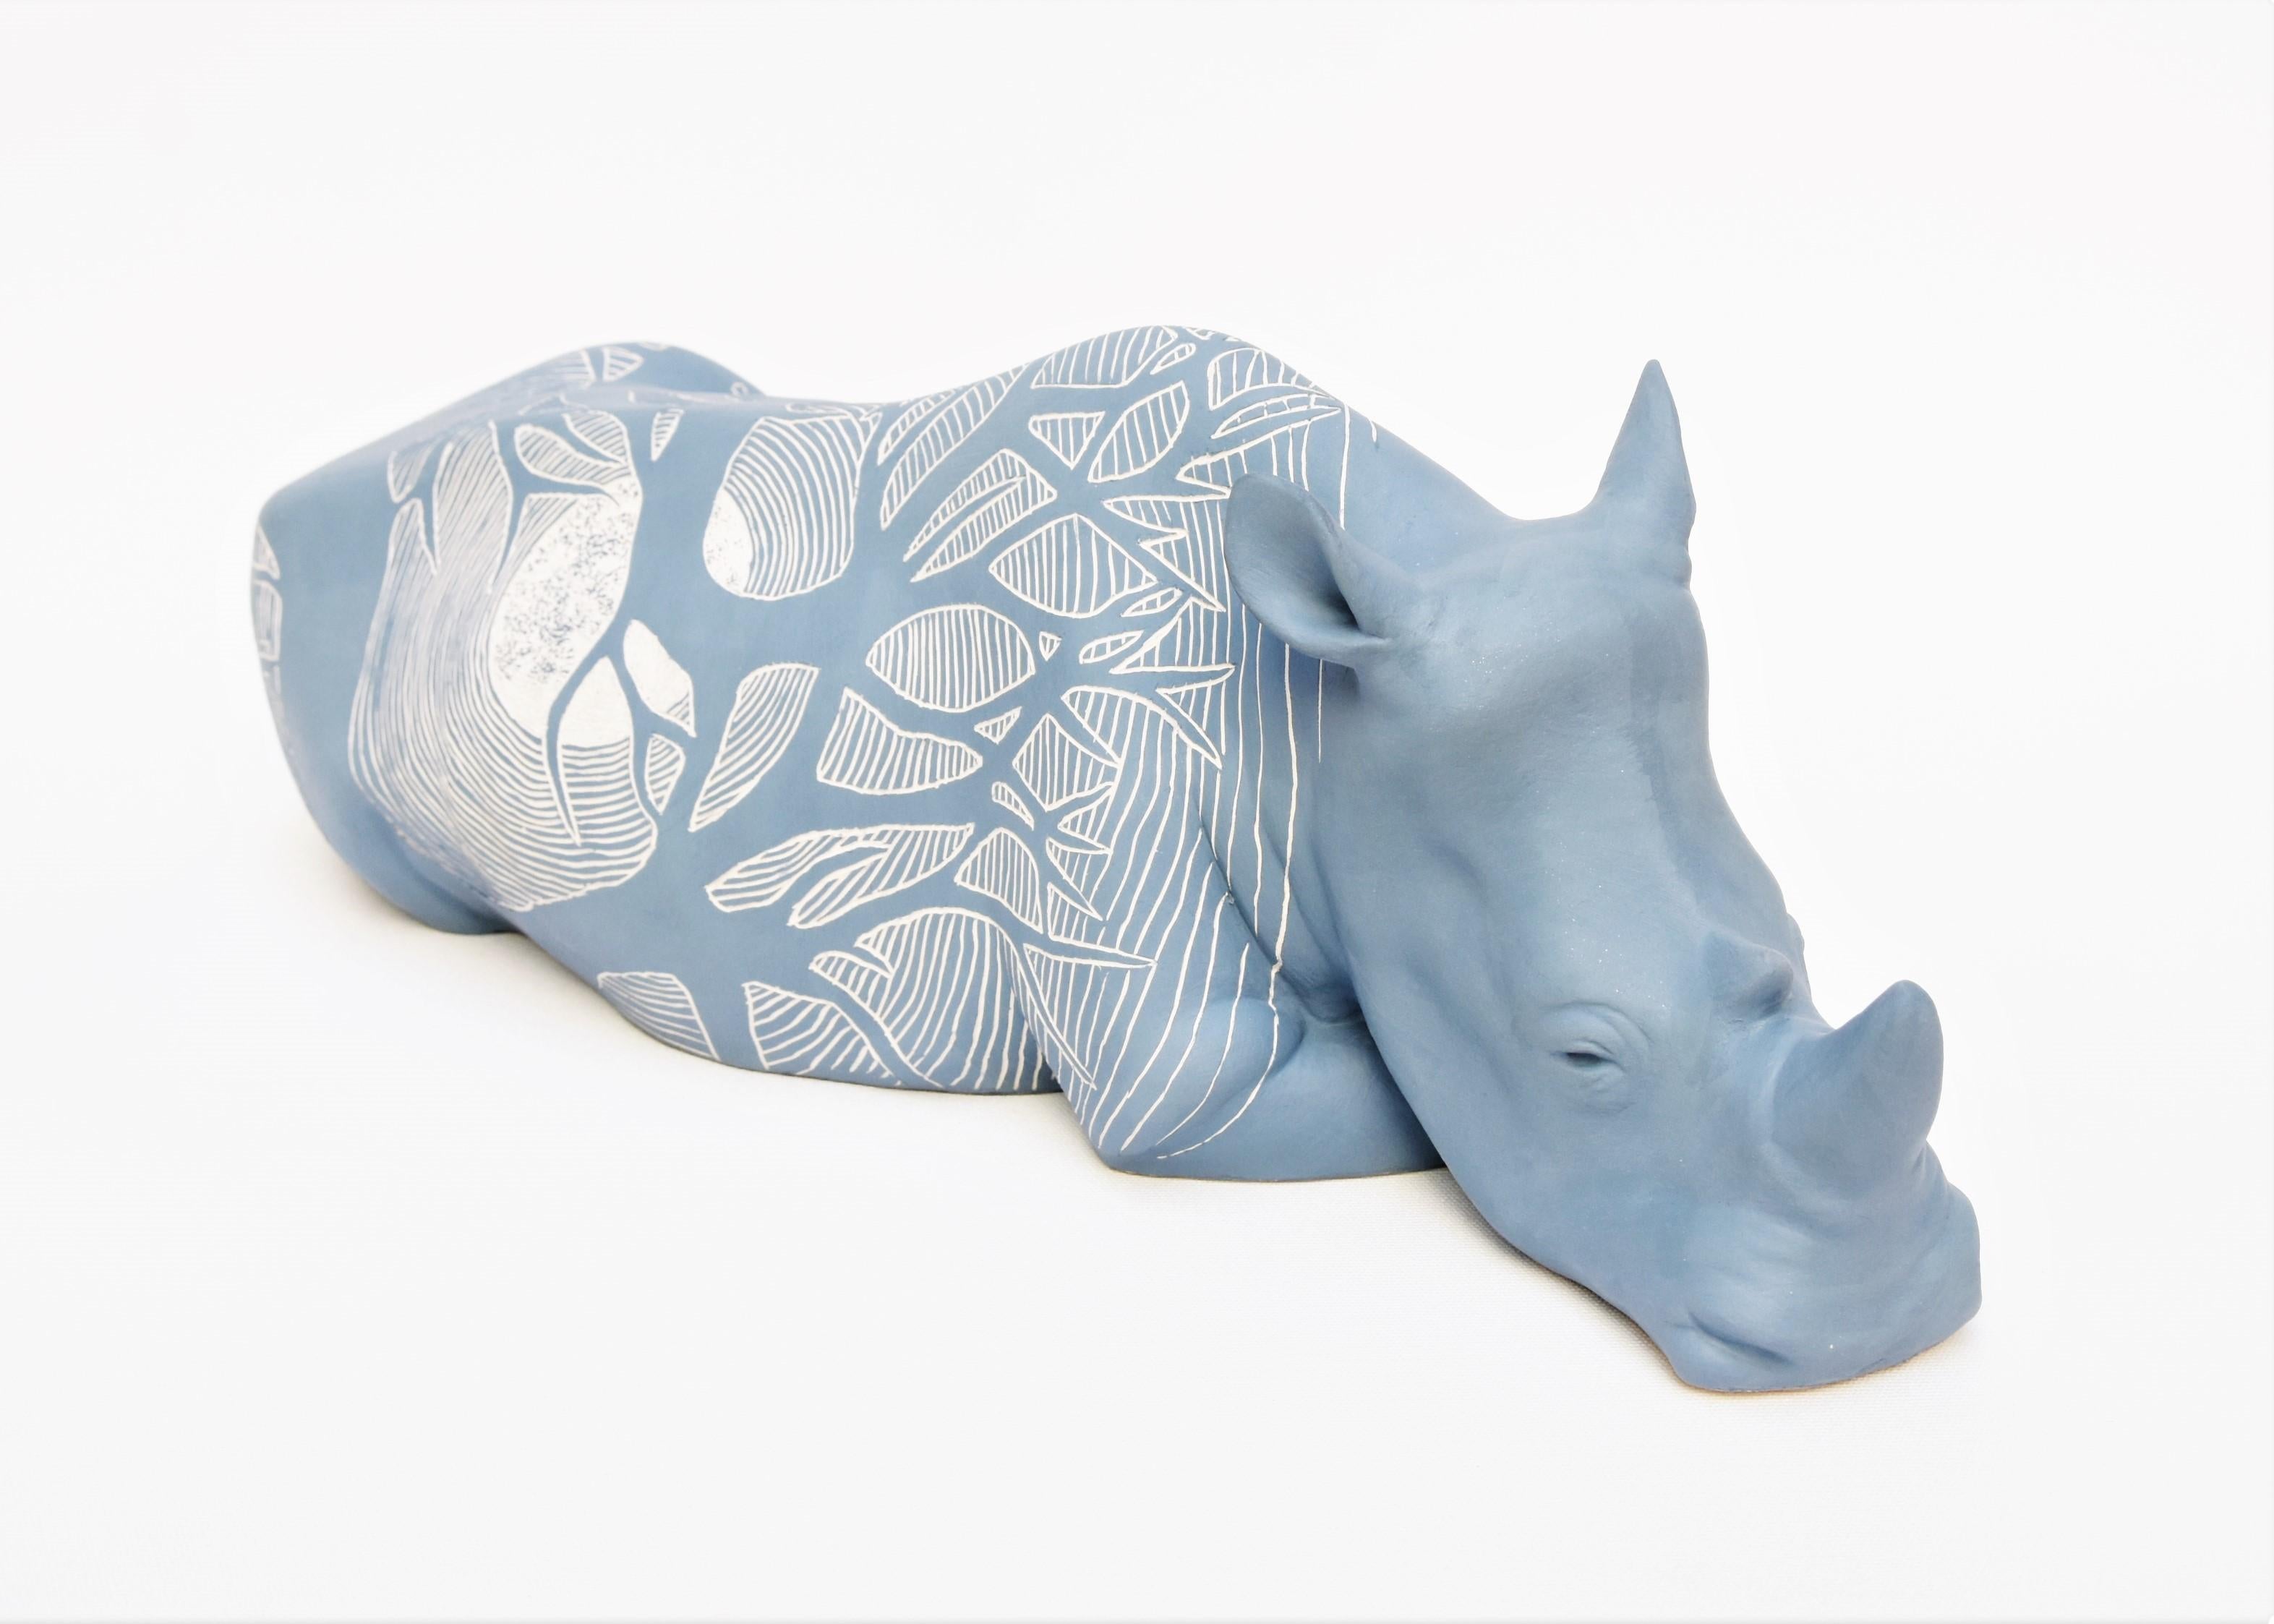 Sabina Pelc Figurative Sculpture - "Rhinoceros - Moonlight", unique animal sculpture, ceramic, sgraffito technique